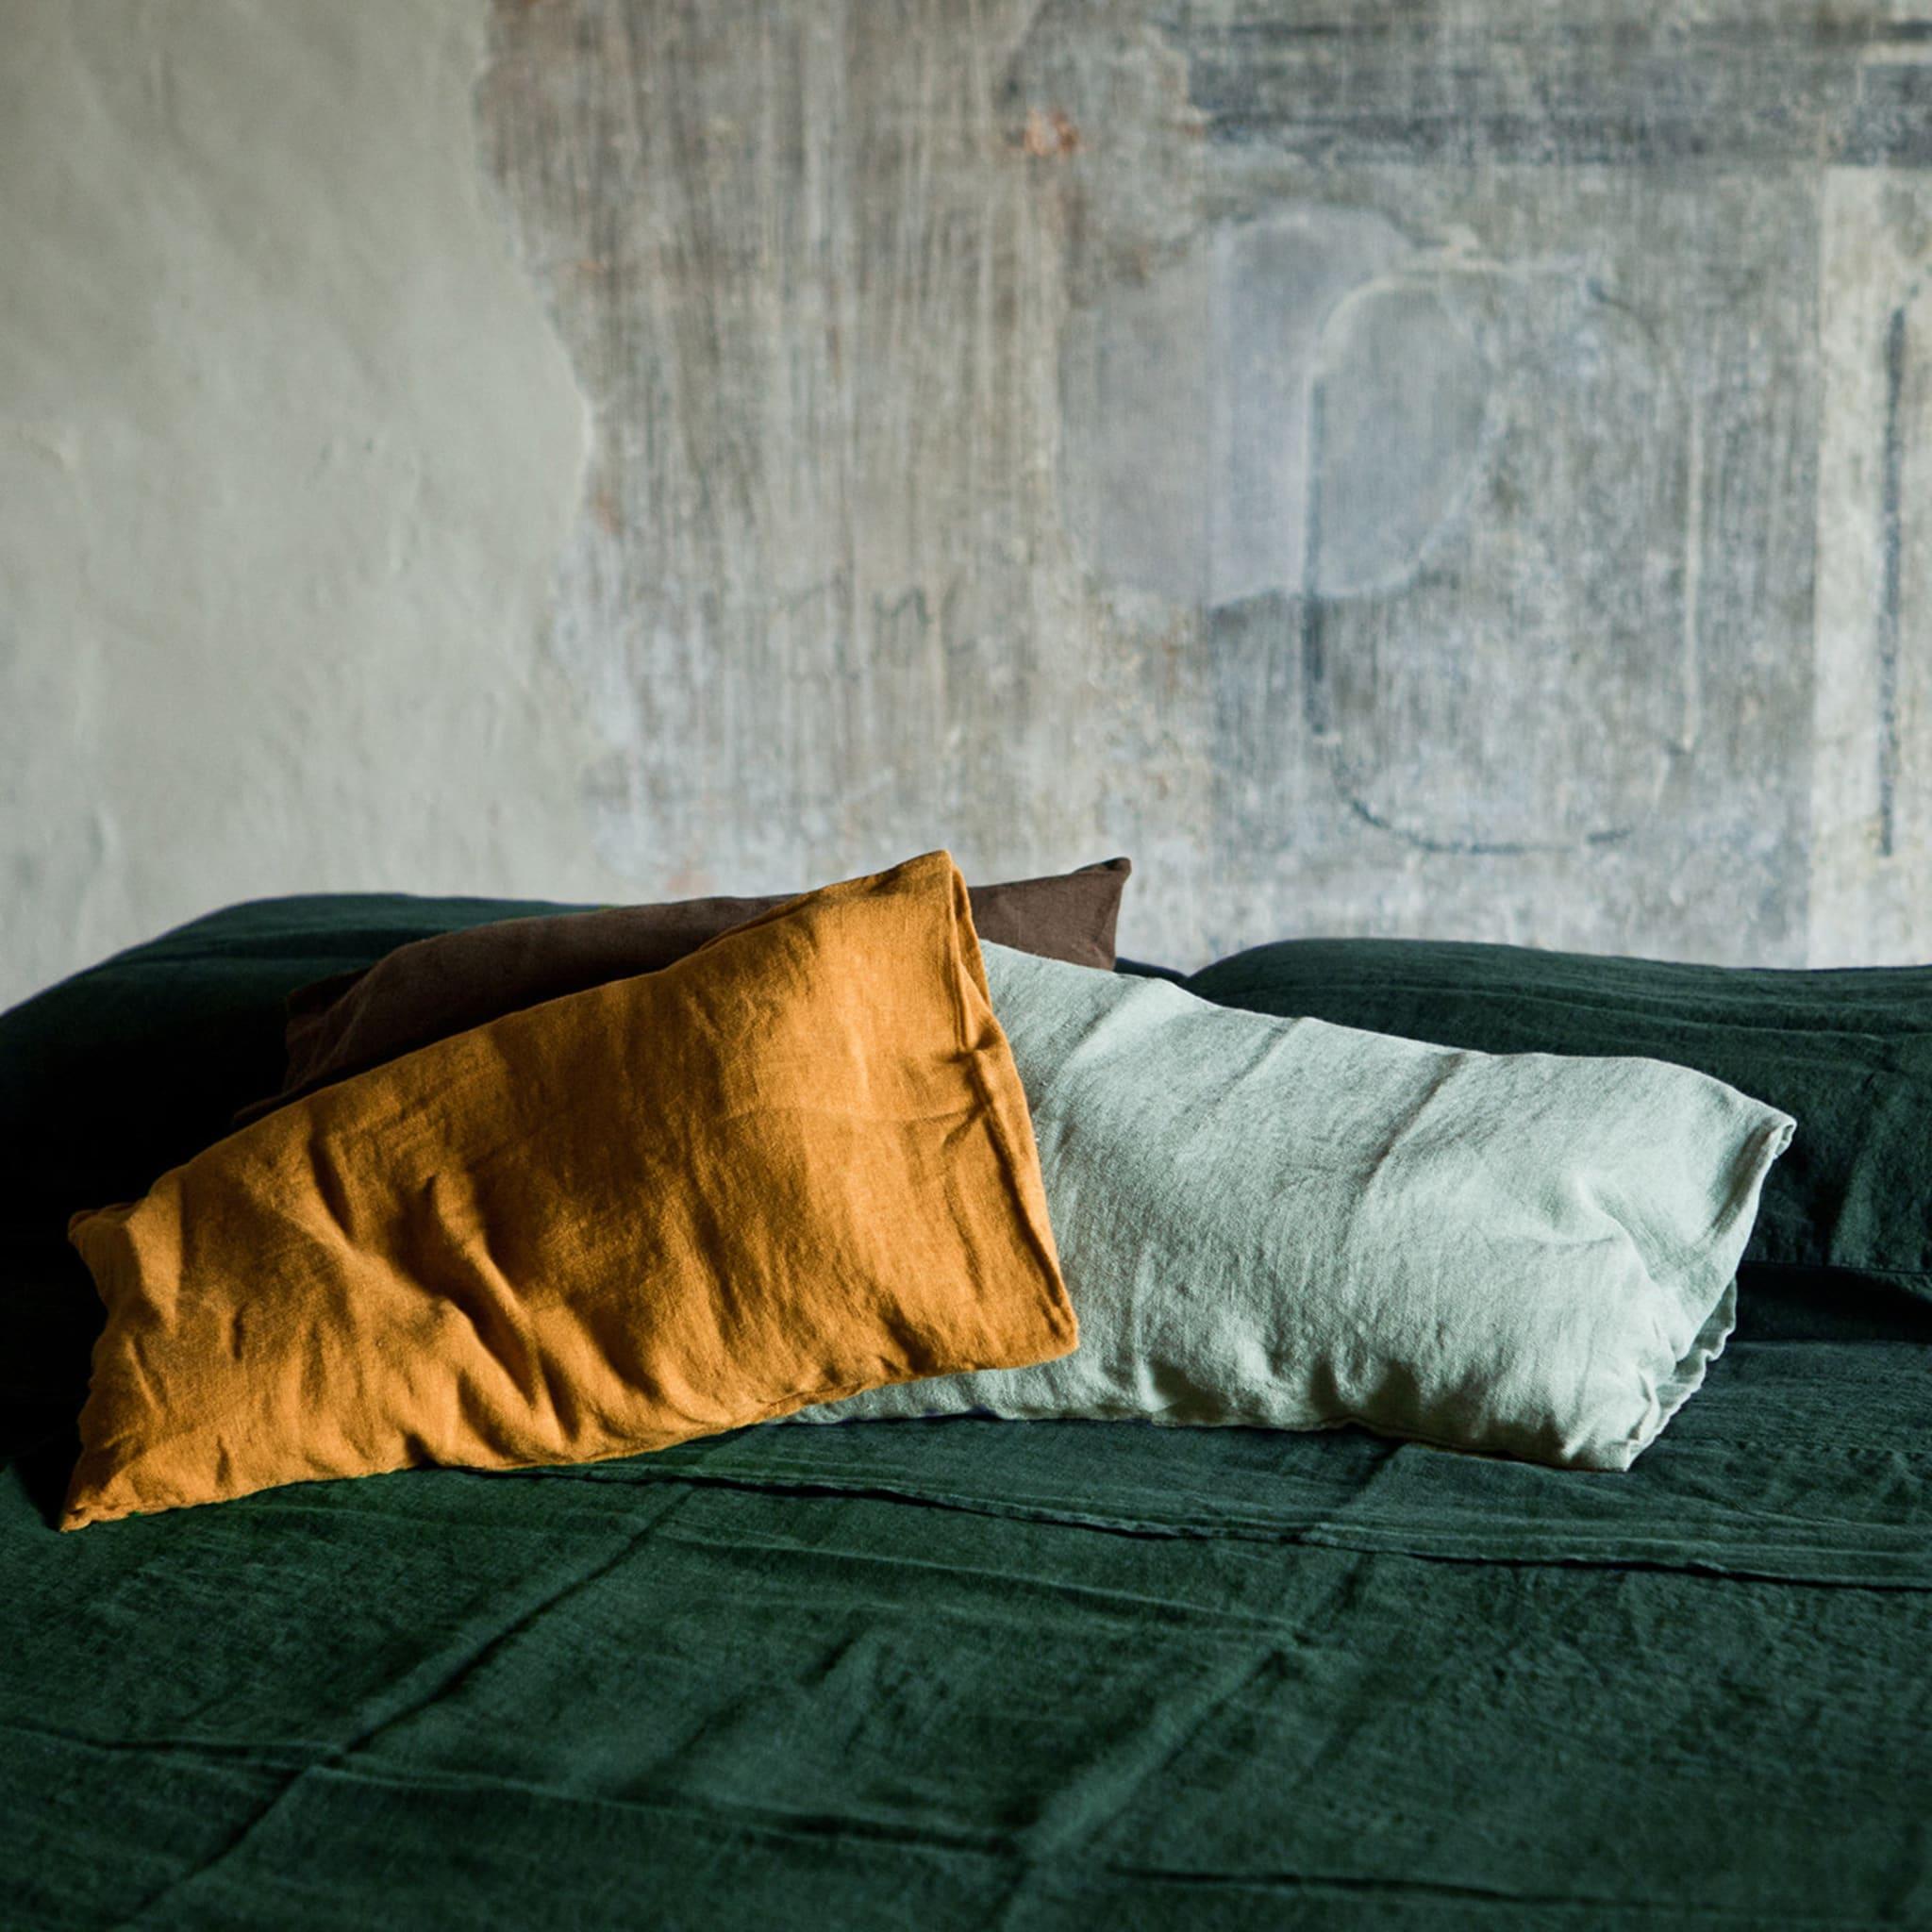 Eine elegante Ergänzung für jedes Heim, wurde diese Bettwäsche aus feinstem Leinen vollständig von Hand gefertigt. Das weiße Spannbettlaken und das auffällige waldgrüne Leinenoberlaken mit den dazu passenden Kissenbezügen bilden eine zeitlose